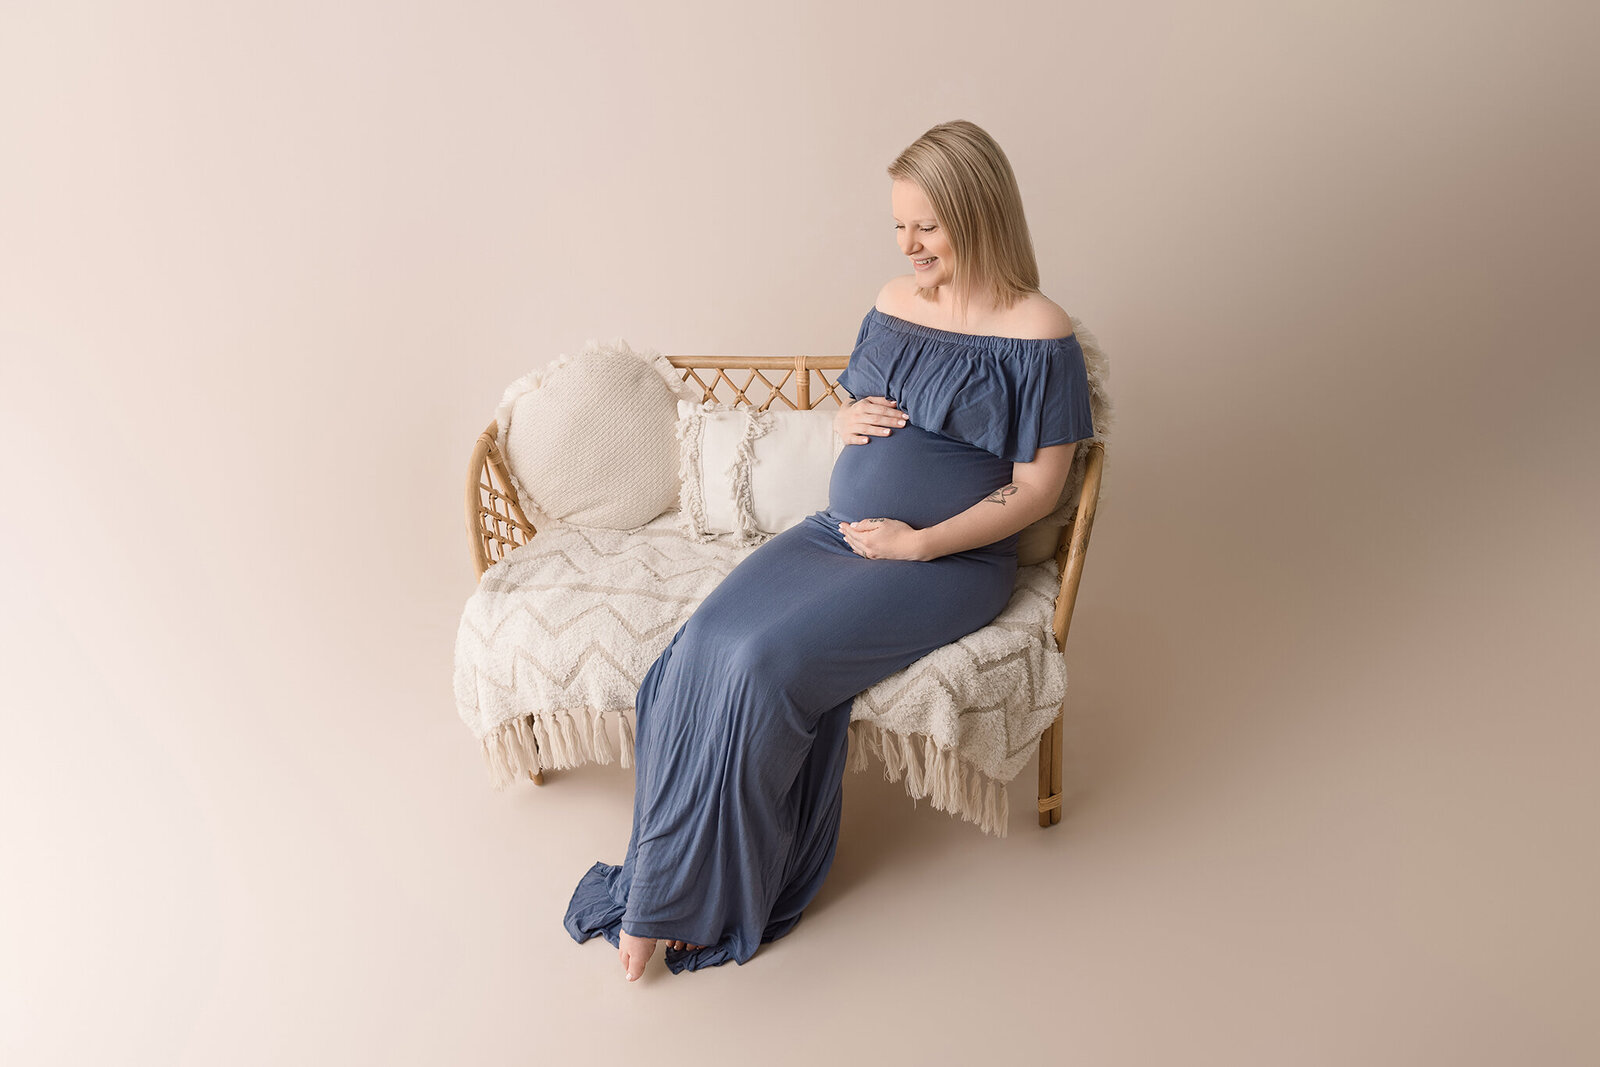 Celebrate Motherhood: Aurora Joy Maternity Photography's Radiant Photoshoot